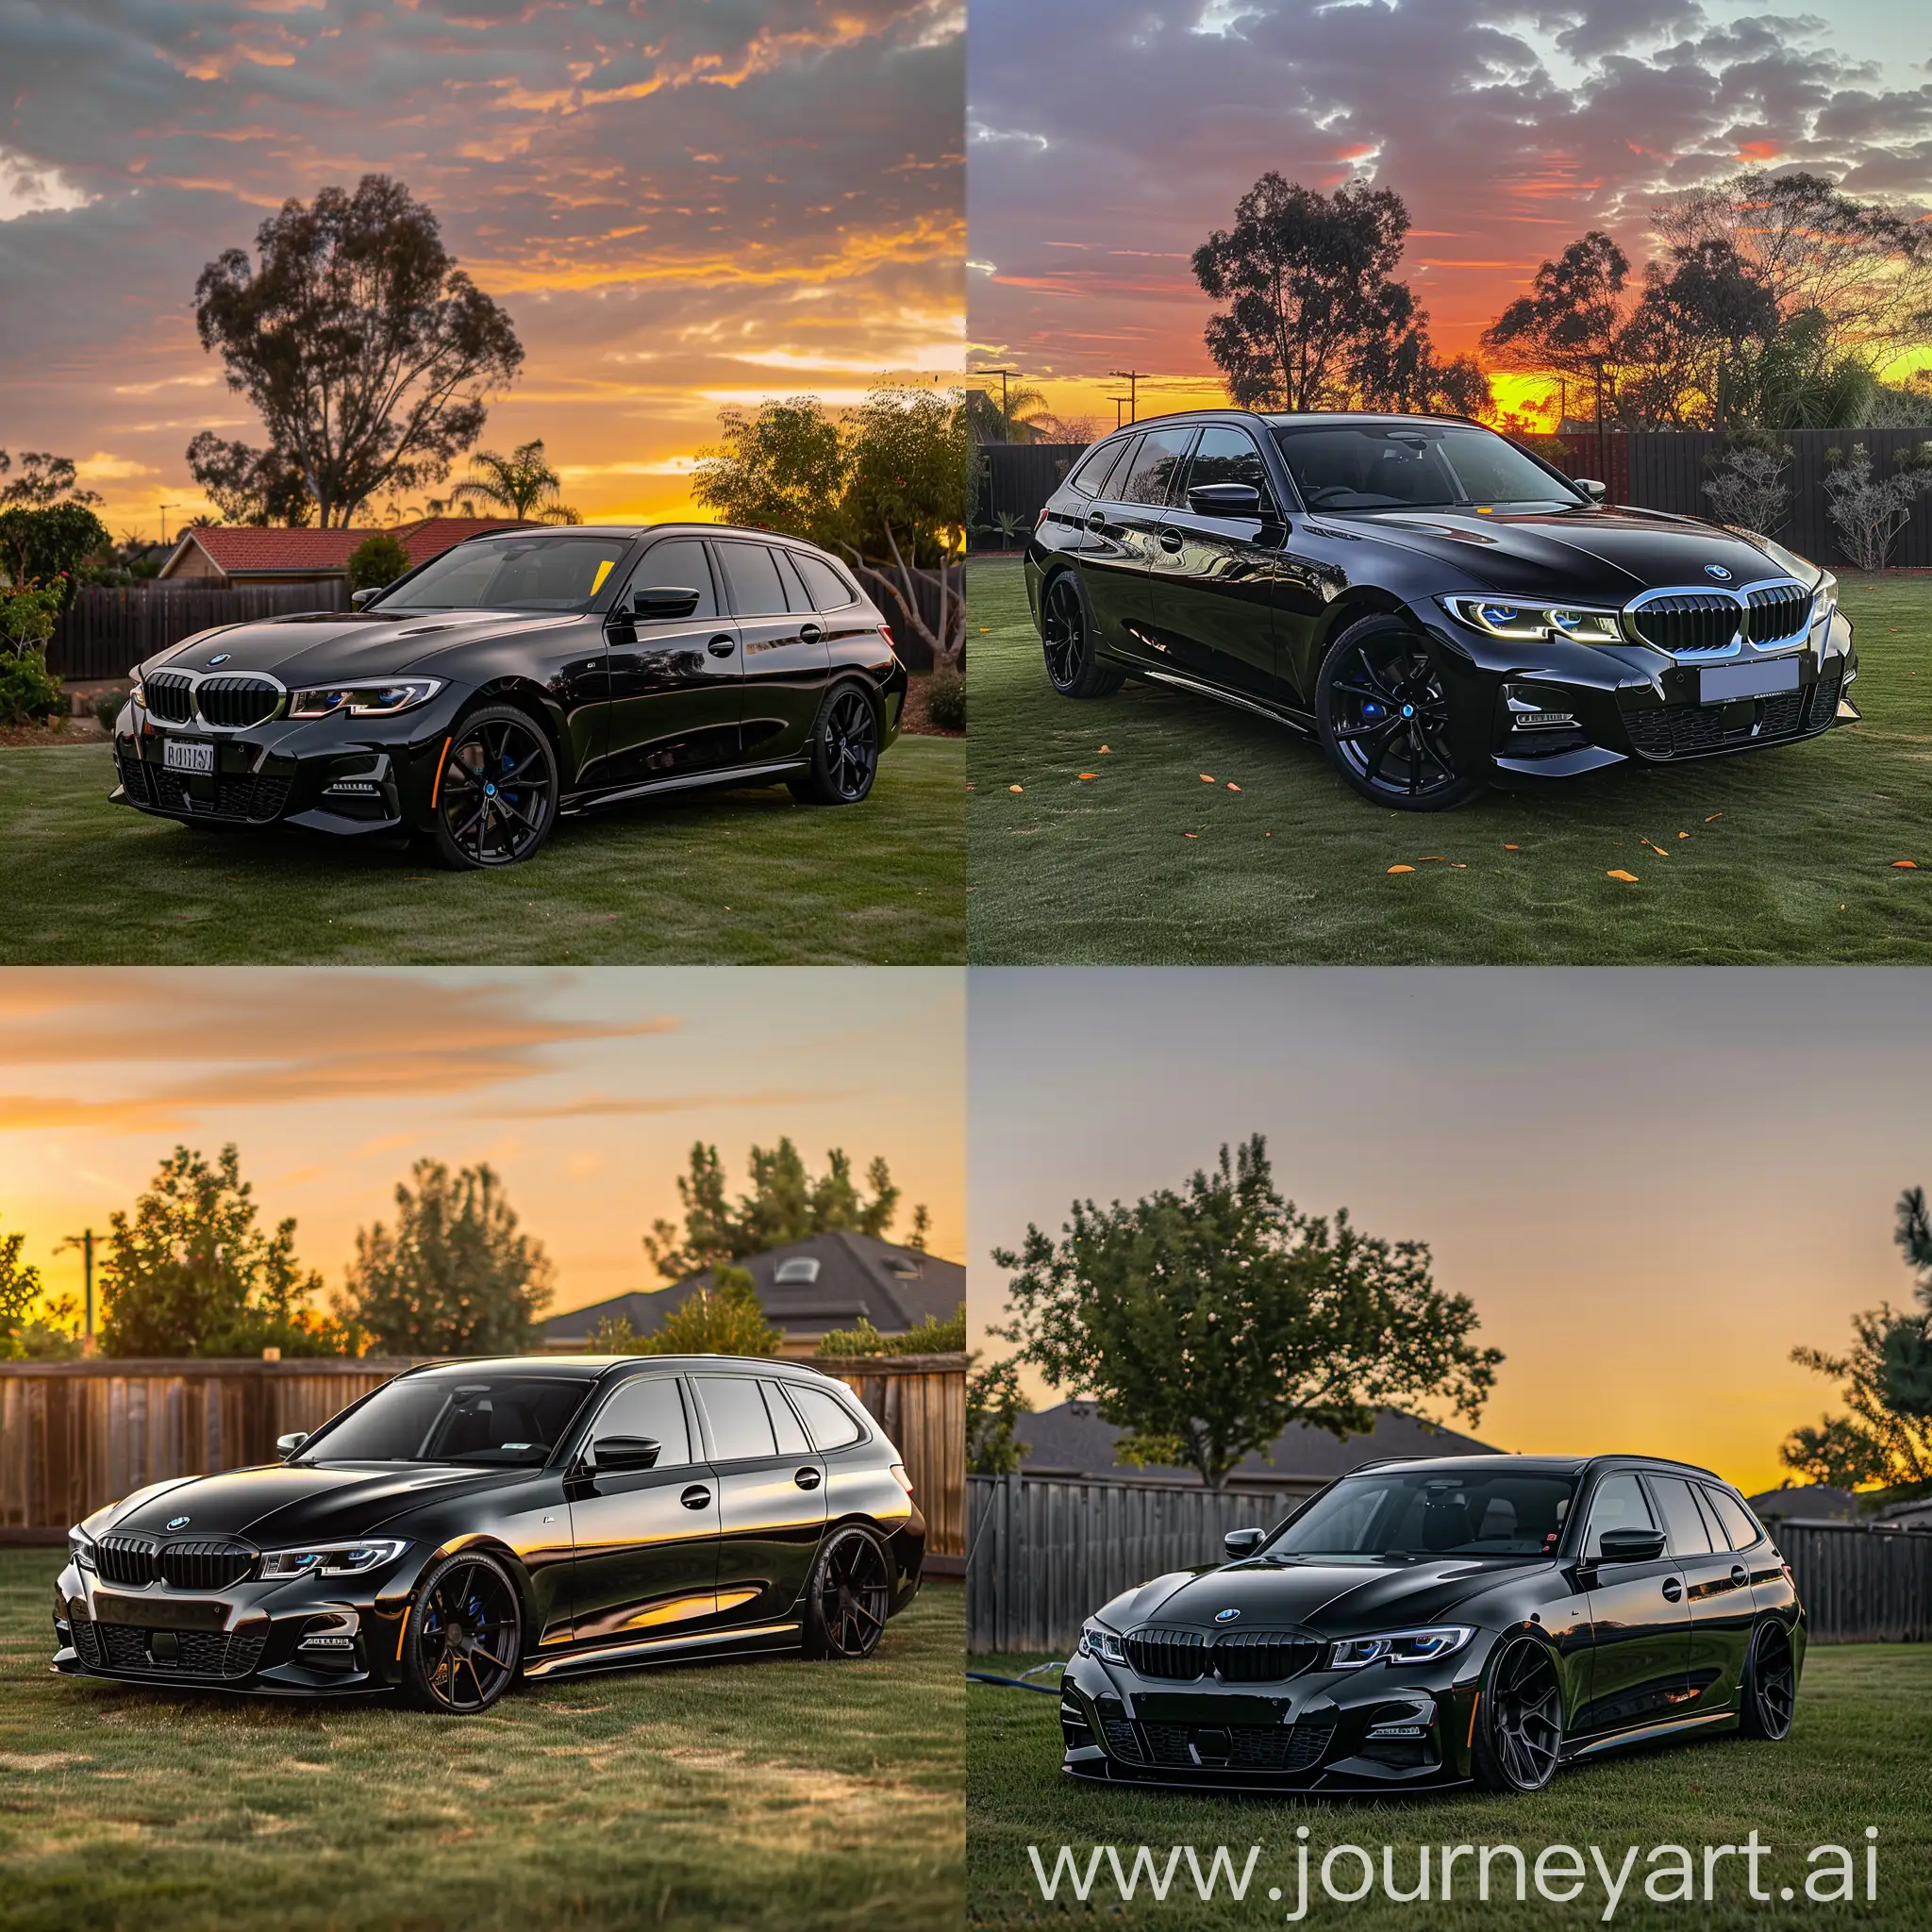 Stunning-2022-BMW-330i-Long-Wagon-in-Metallic-Black-at-Sunset